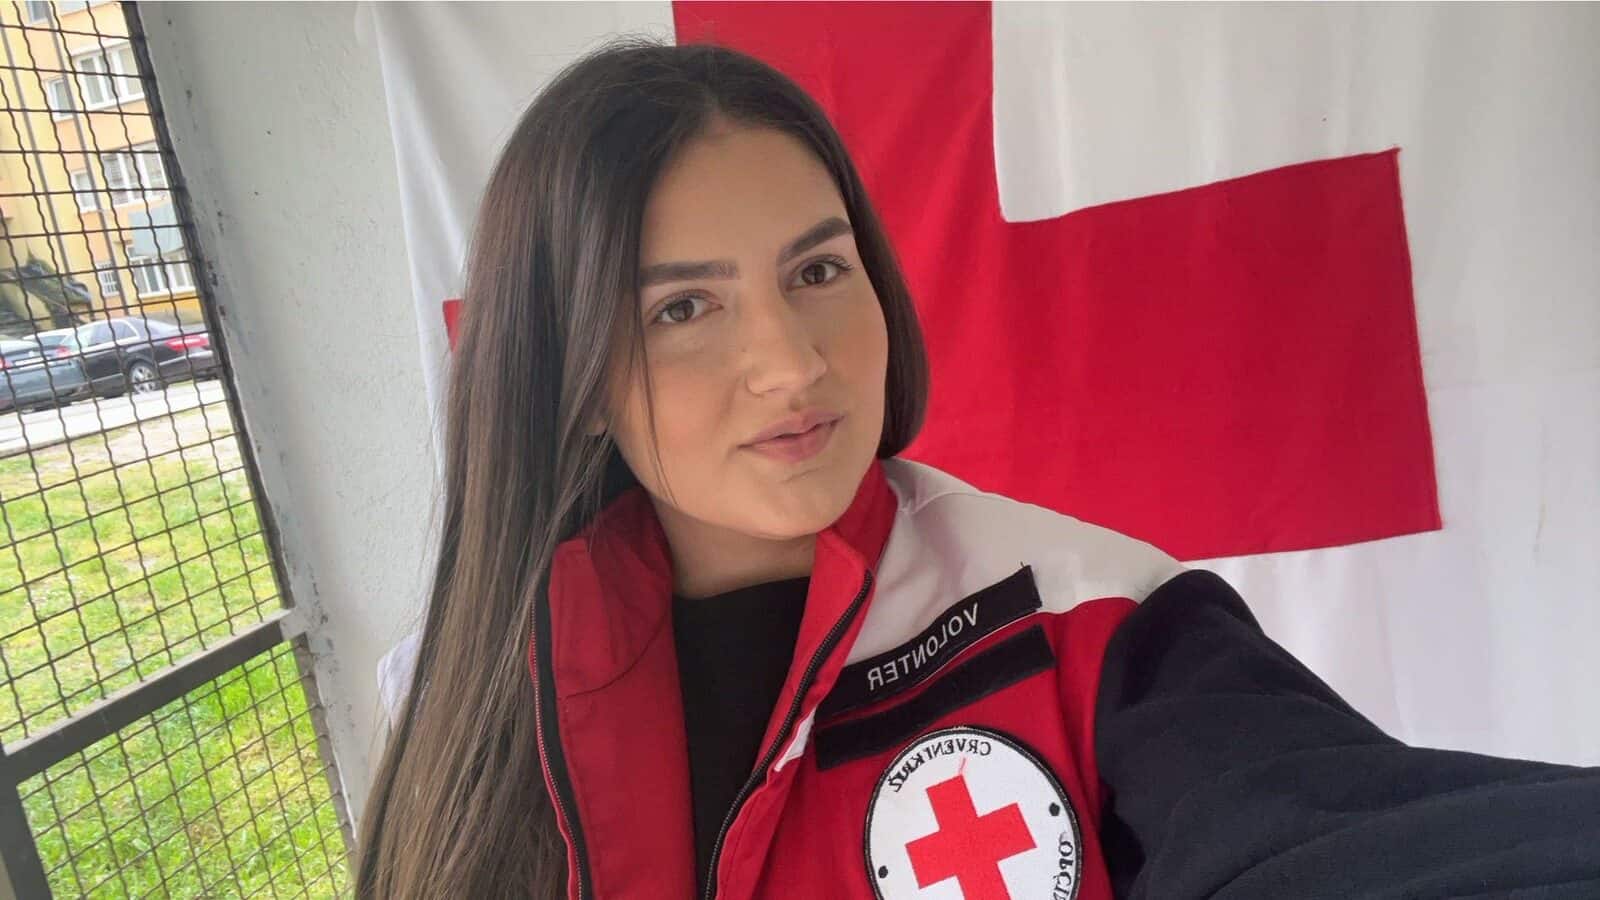 Volonterka Ilda Ćehić: “Pomaganje drugima me čini sretnom”